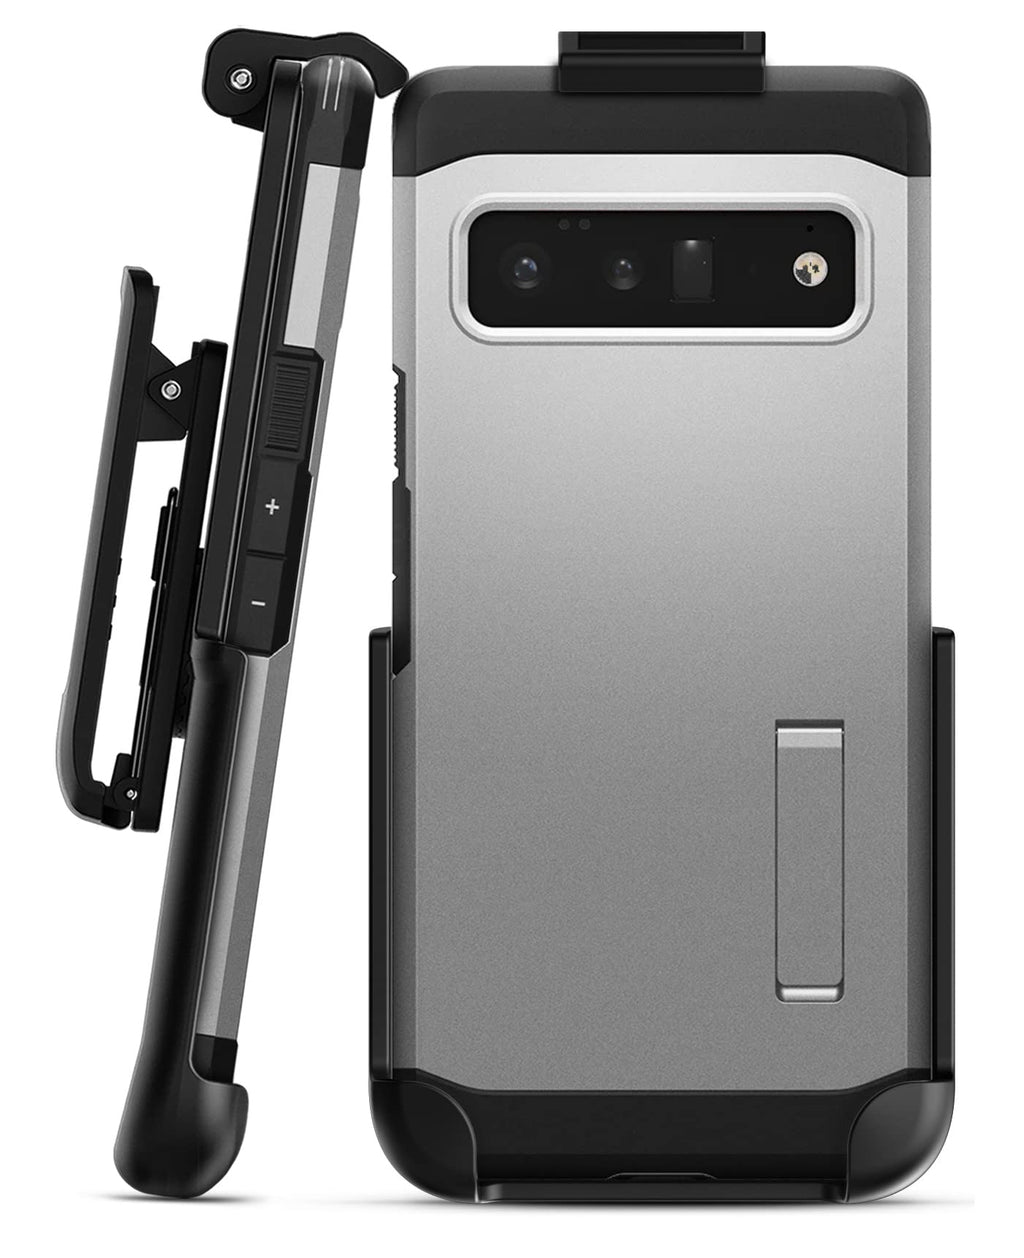  [AUSTRALIA] - Encased Belt Clip Holster, Fits Spigen Tough Armor Case (Pixel 6 Pro) Holster Only - Case Not Included